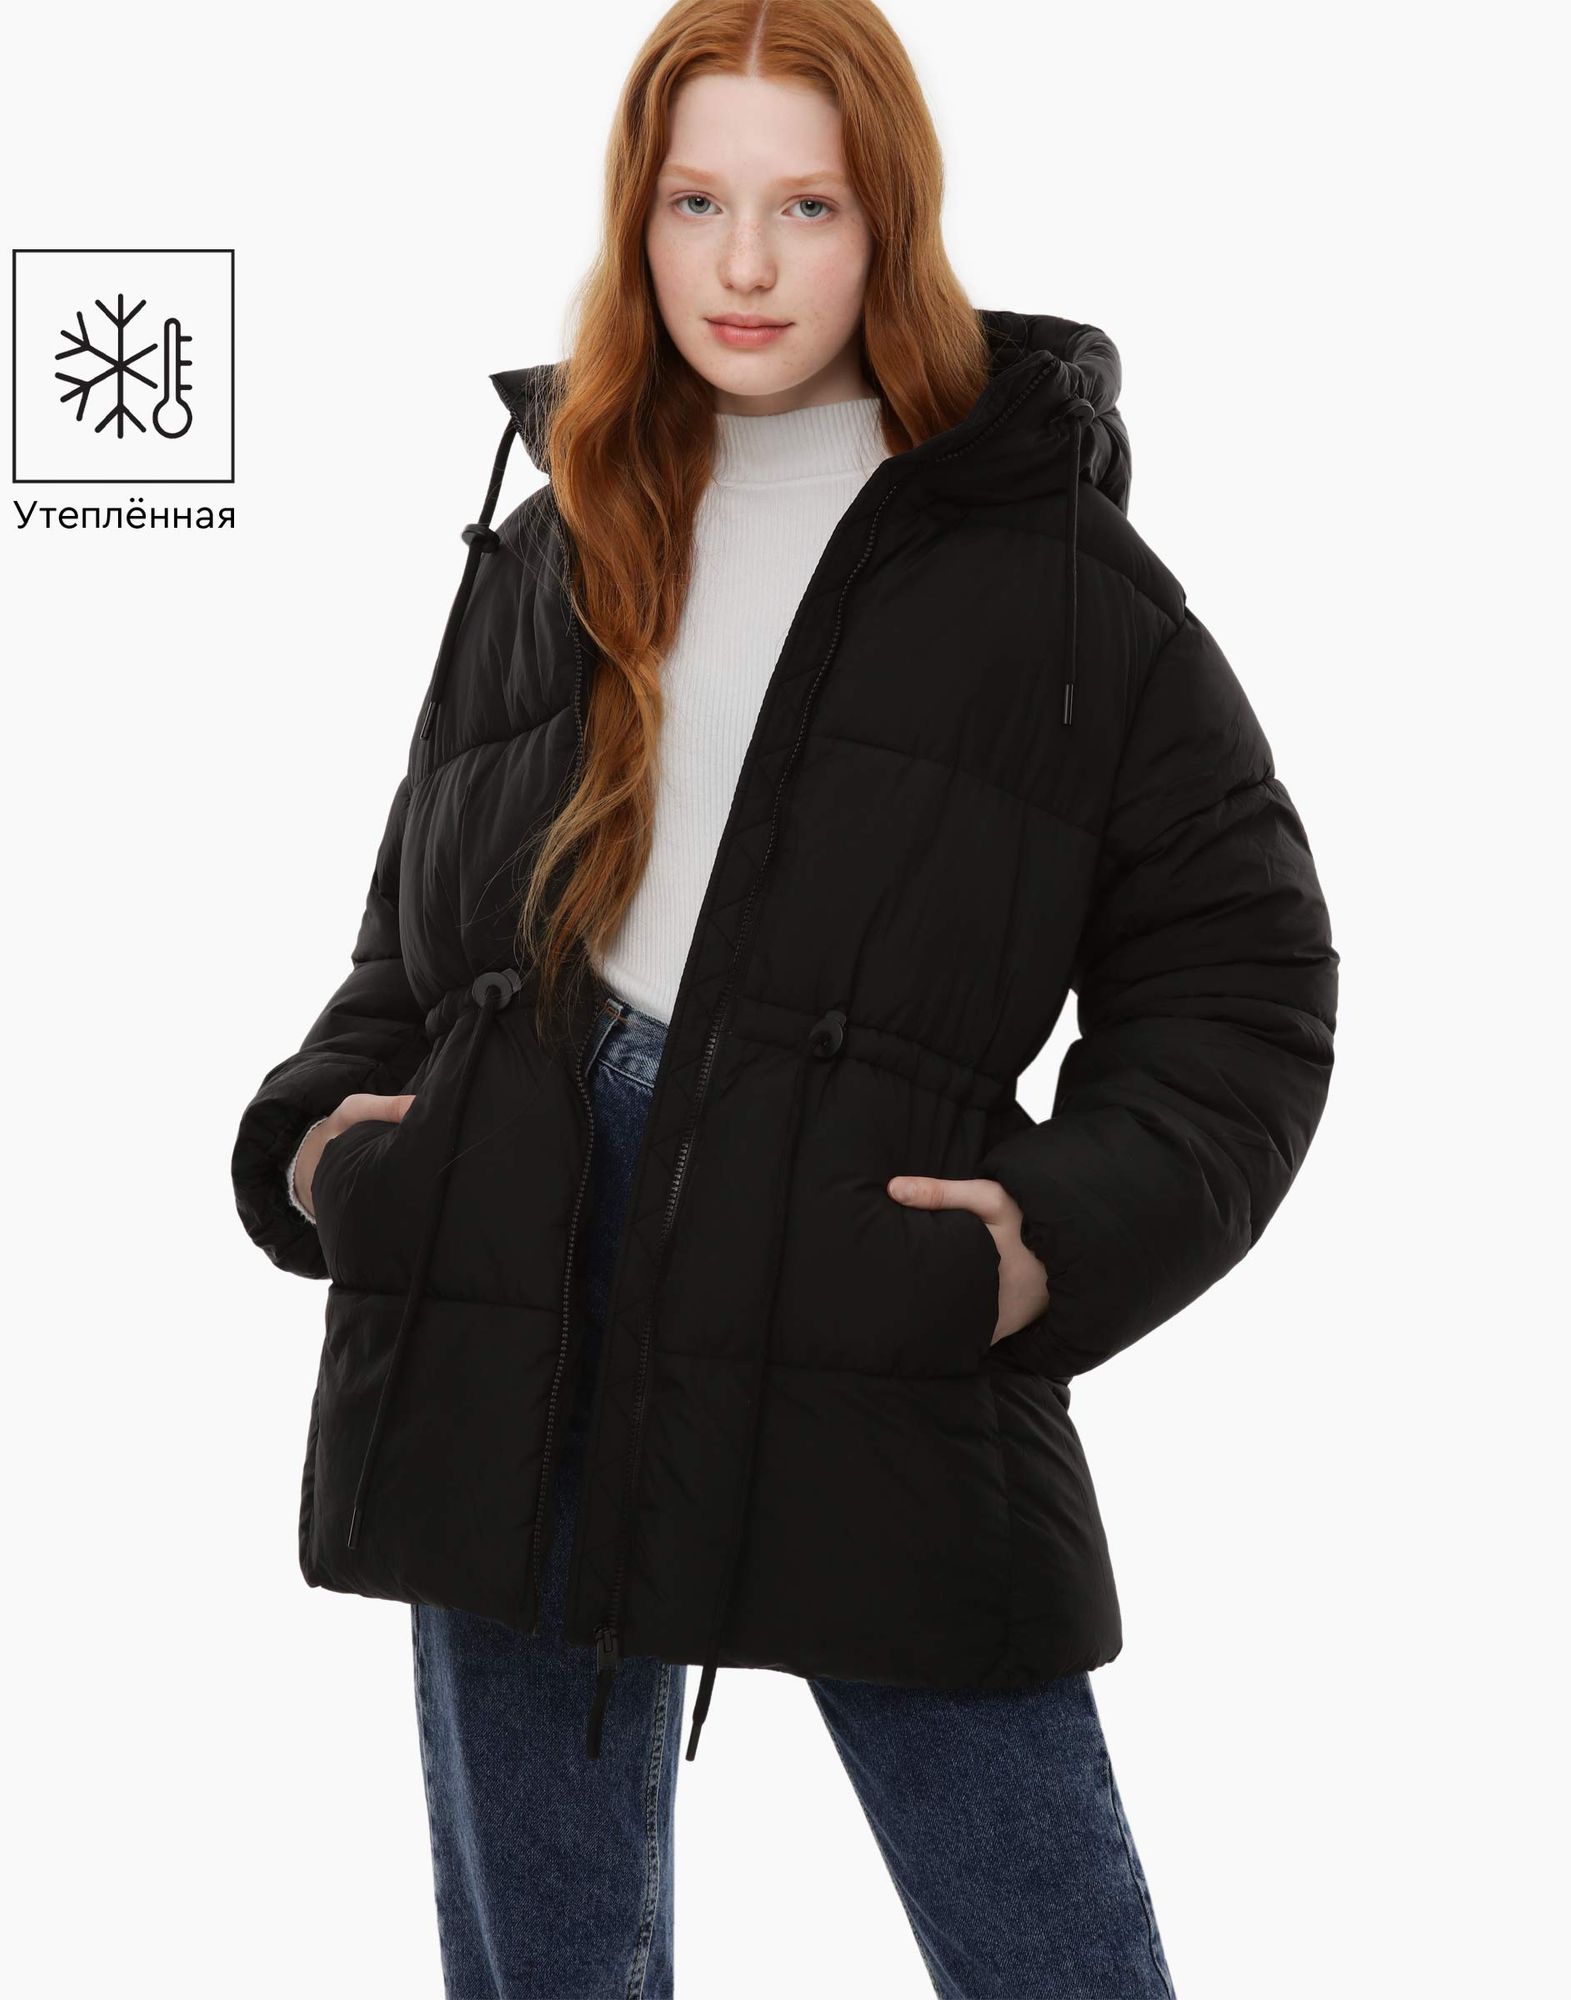 Чёрная утеплённая куртка с синтепухом для девочки-0